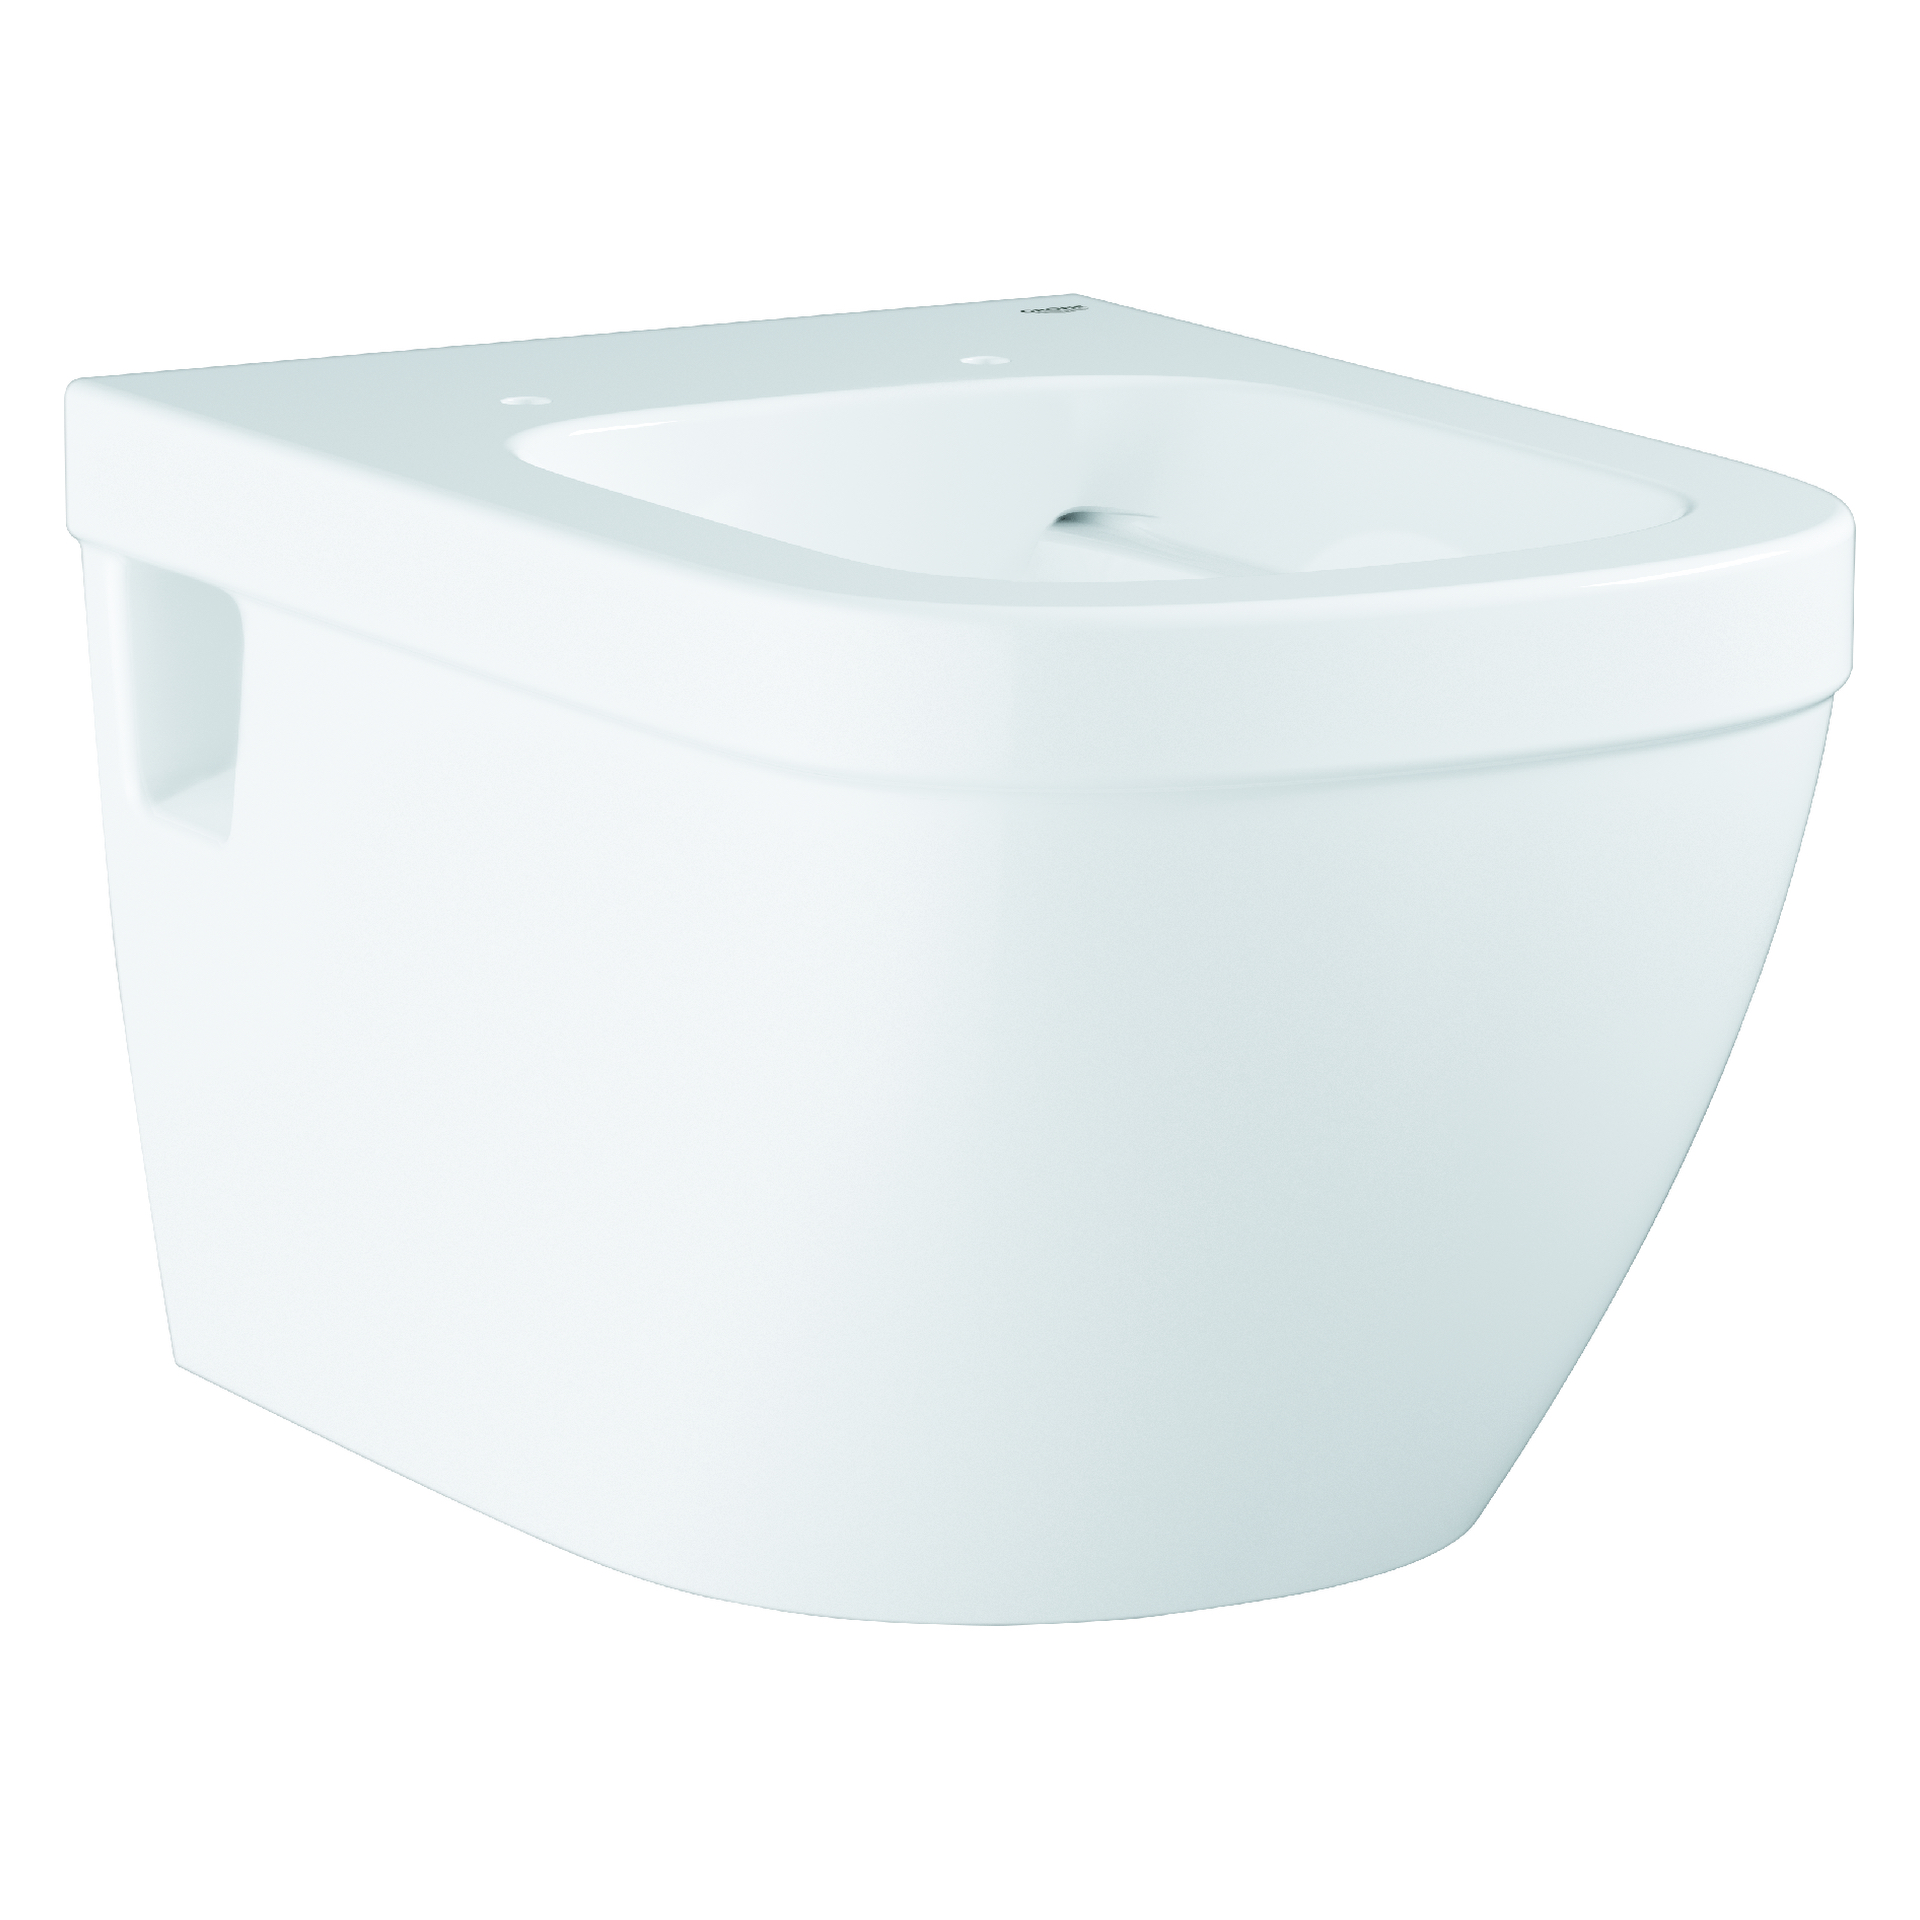 Wand-Tiefspül-WC Basic Euro Keramik 39538, für Unterputz-Spülkasten, Abgang waagerecht, spülrandlos, aus Sanitärkeramik, alpinweiß